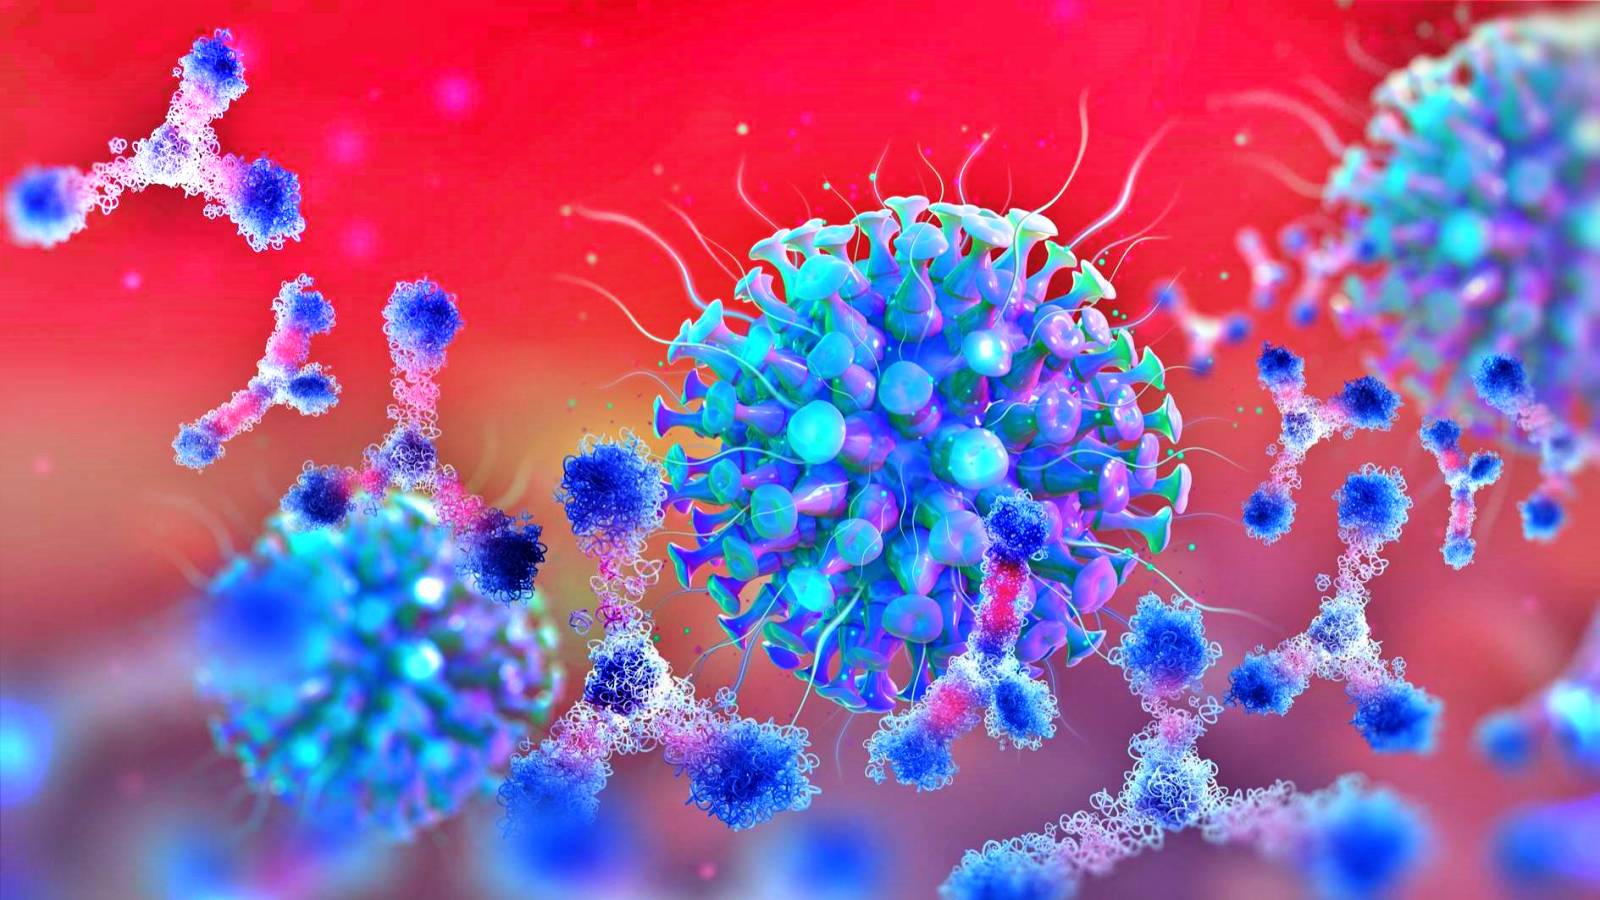 Koronavirus Romania jatkaa uusien tapausten määrän kasvua, ilmoitettu 24. tammikuuta 2022